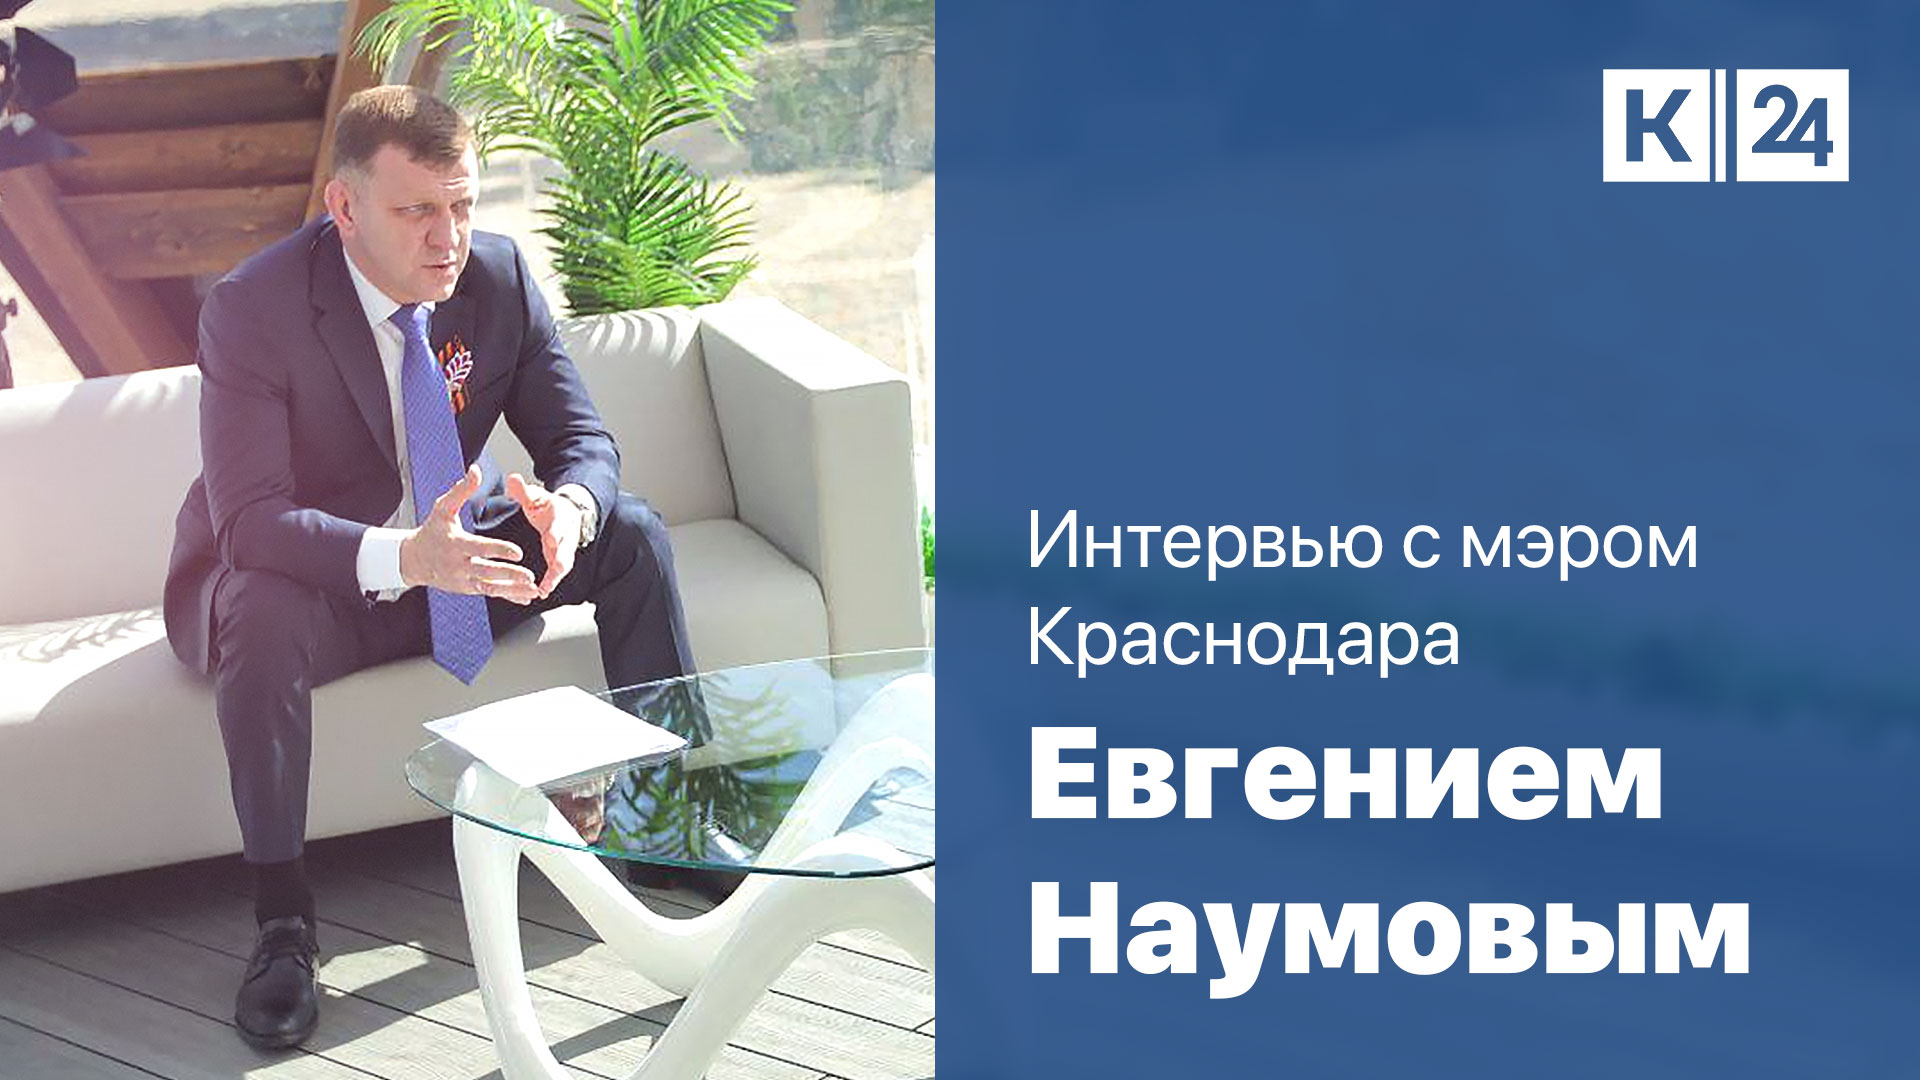 Евгений Наумов: у Краснодара огромный туристический потенциал